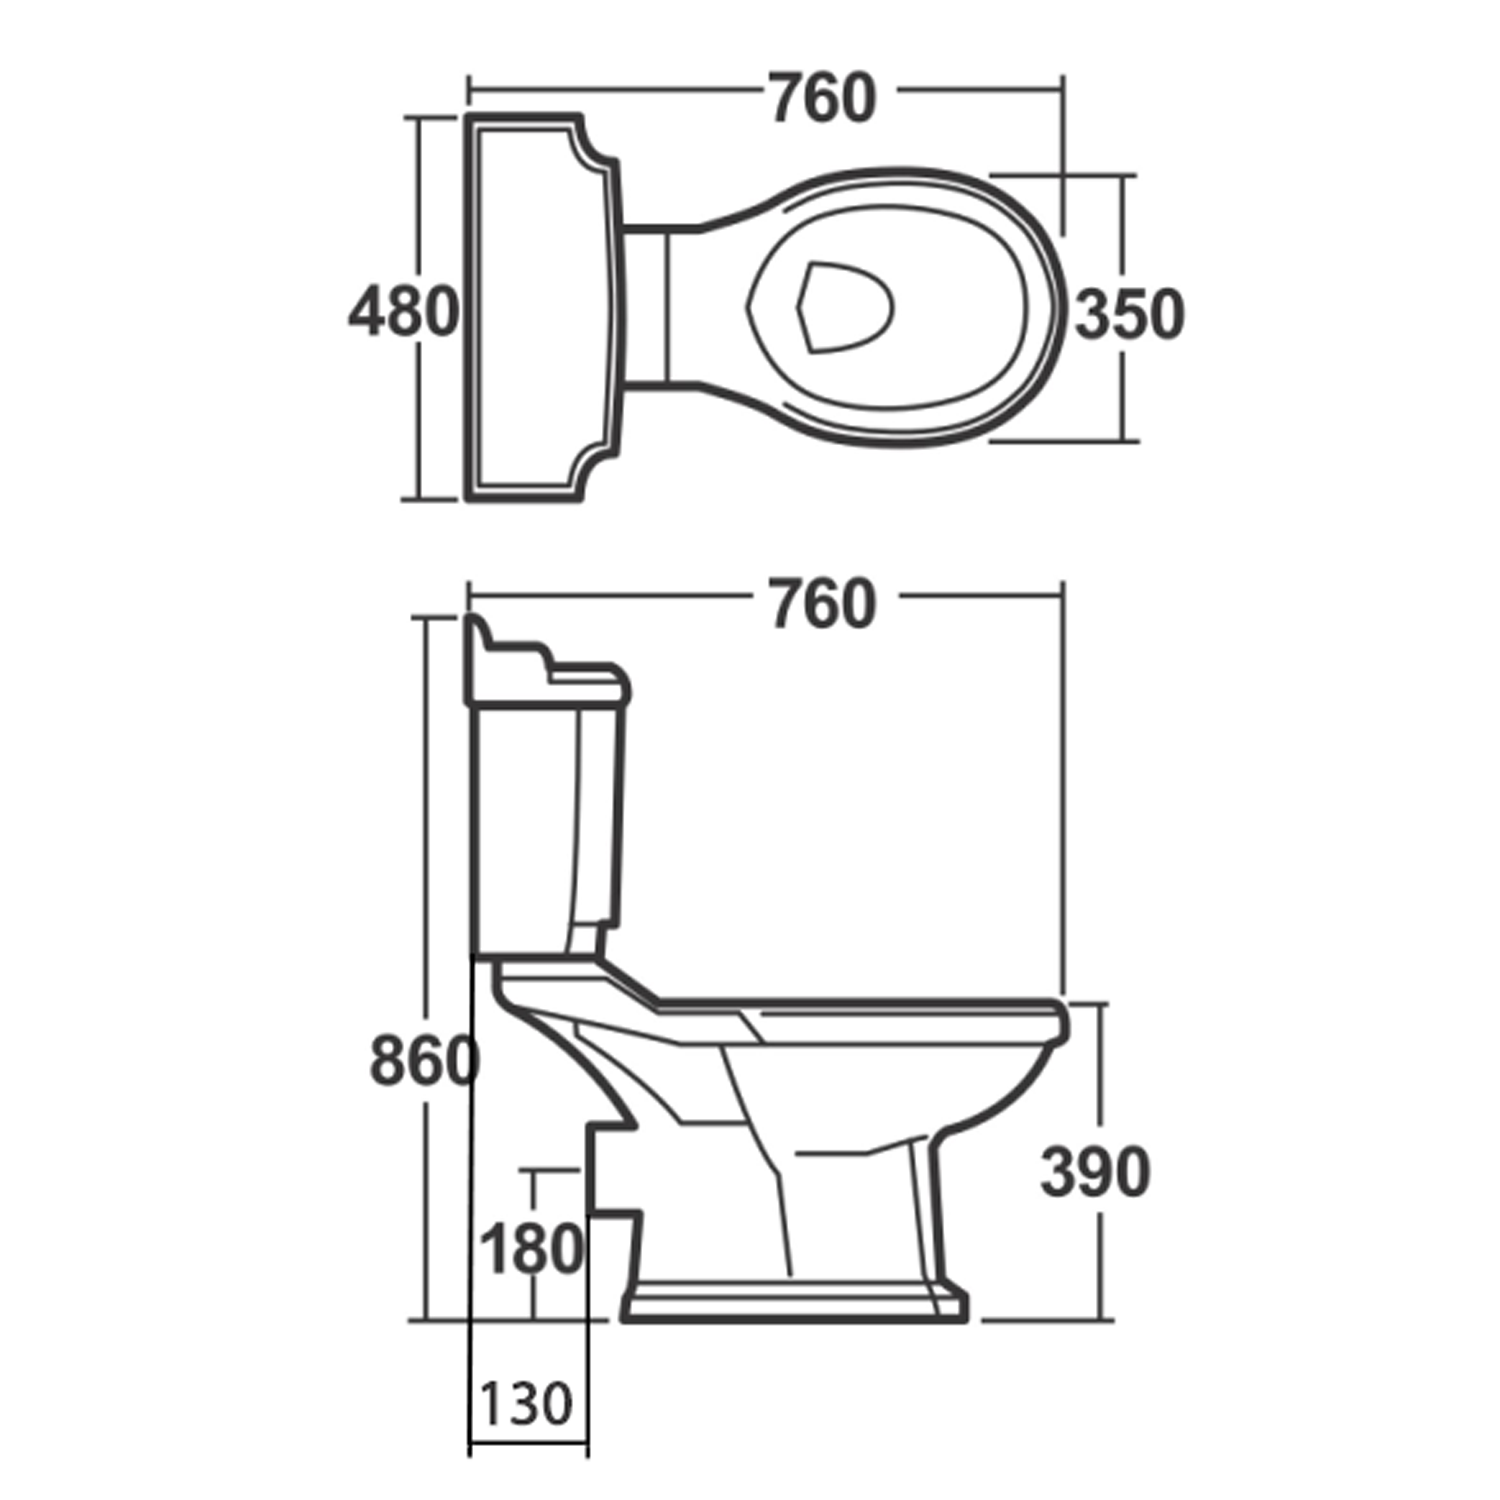 ANTIK WC Spülkasten inklusive Spülmechanismus, weis